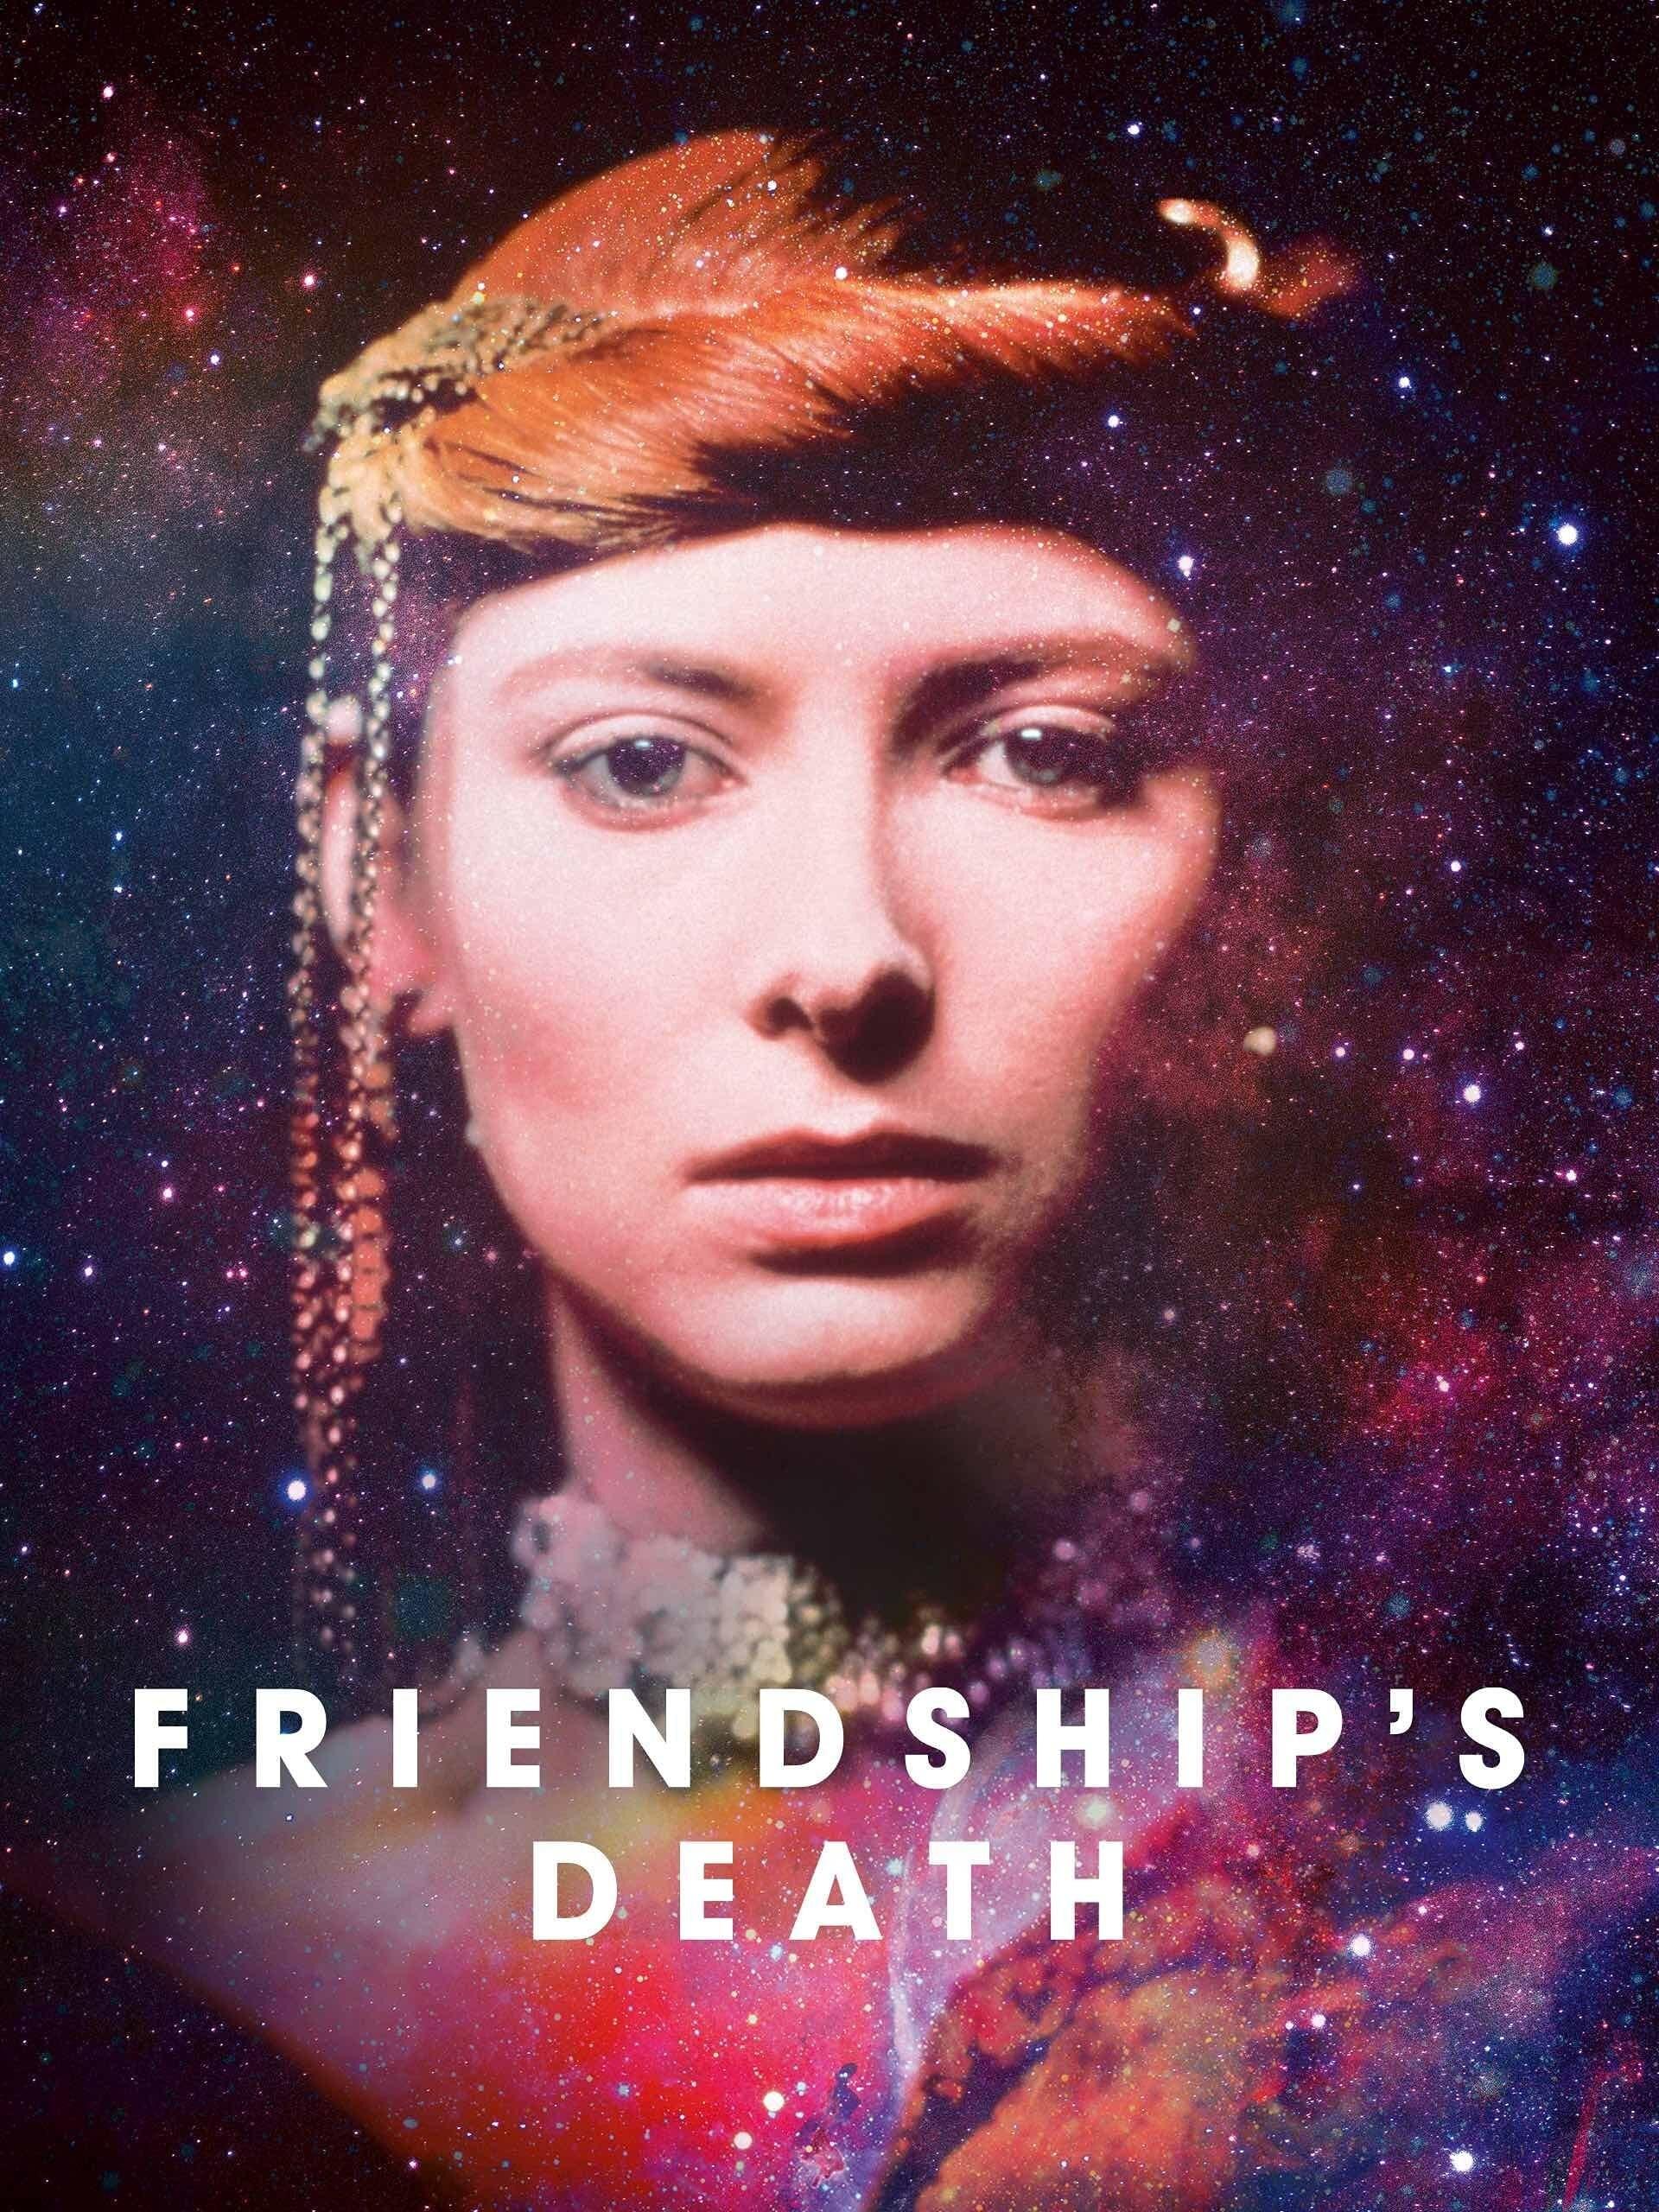 Friendship's Death poster